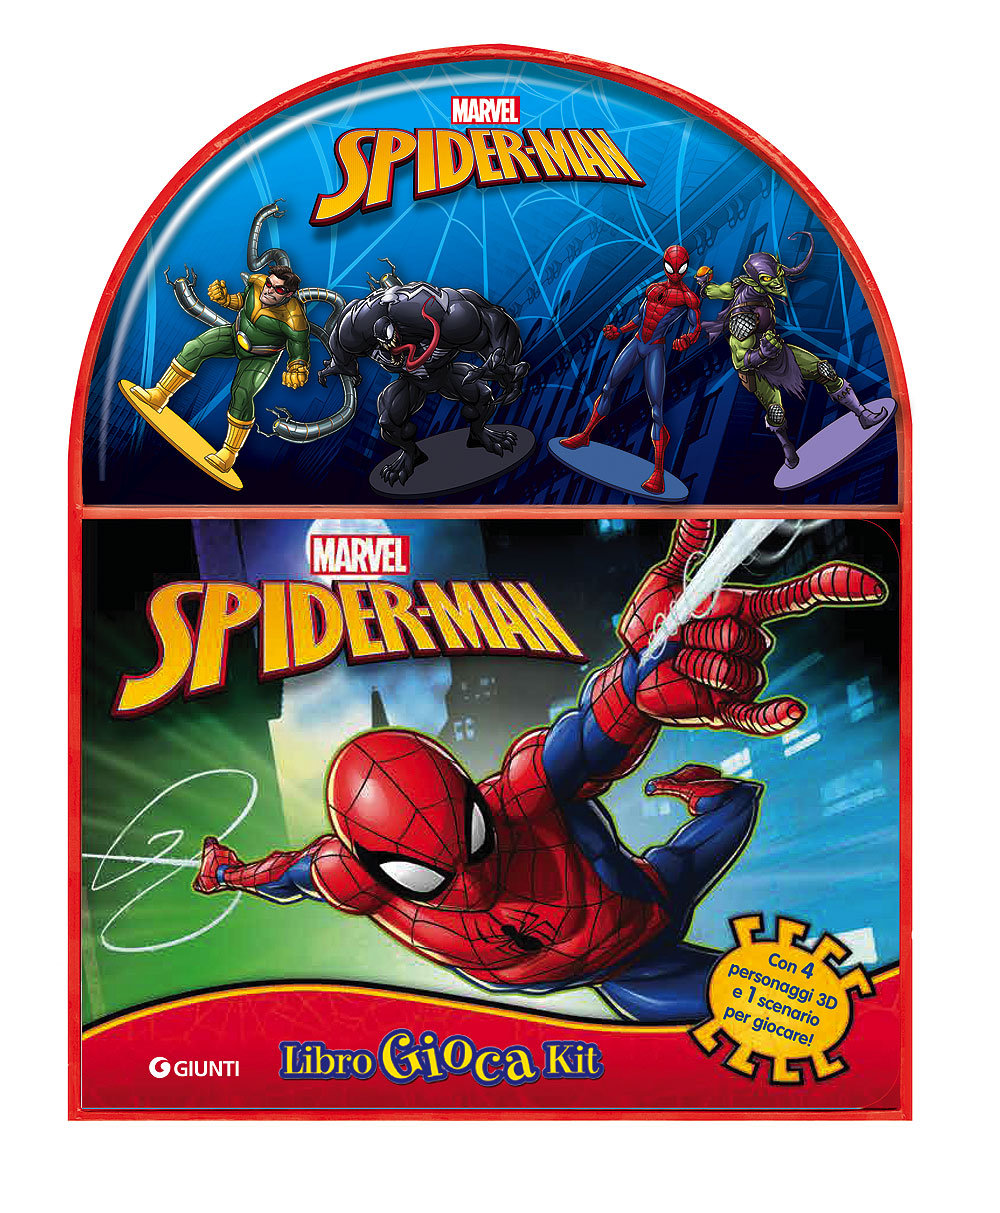 Spider-Man - LibroGiocaKit. Con 4 personaggi 3D e 1 scenario per giocare!:  libro di Walt Disney